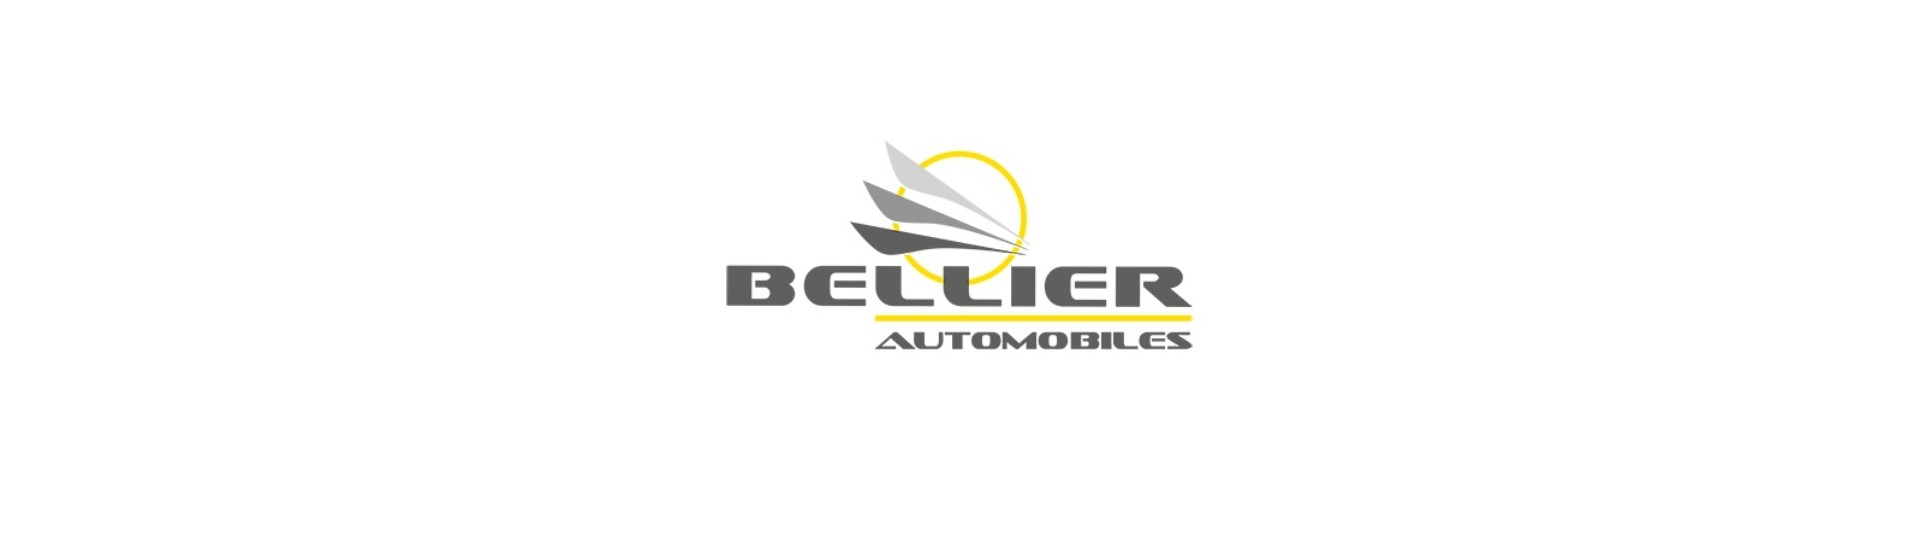 Relais / módulo de coche electrónico sin permiso Bellier